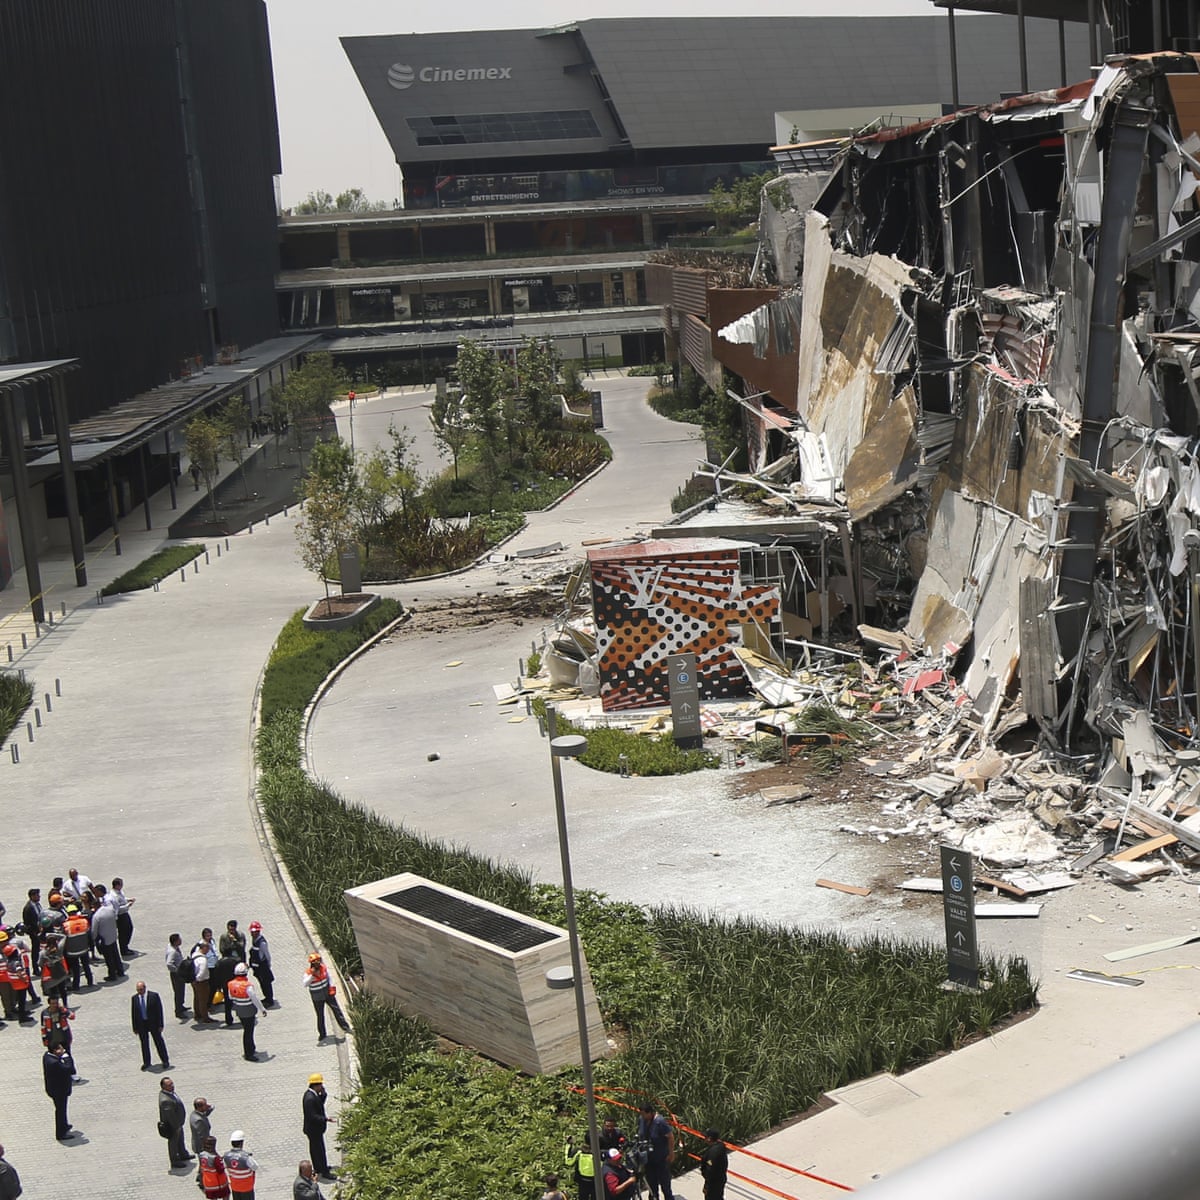 Un pan explosión Relativo Mexico City: newly opened Artz Pedregal shopping mall collapses | Mexico |  The Guardian